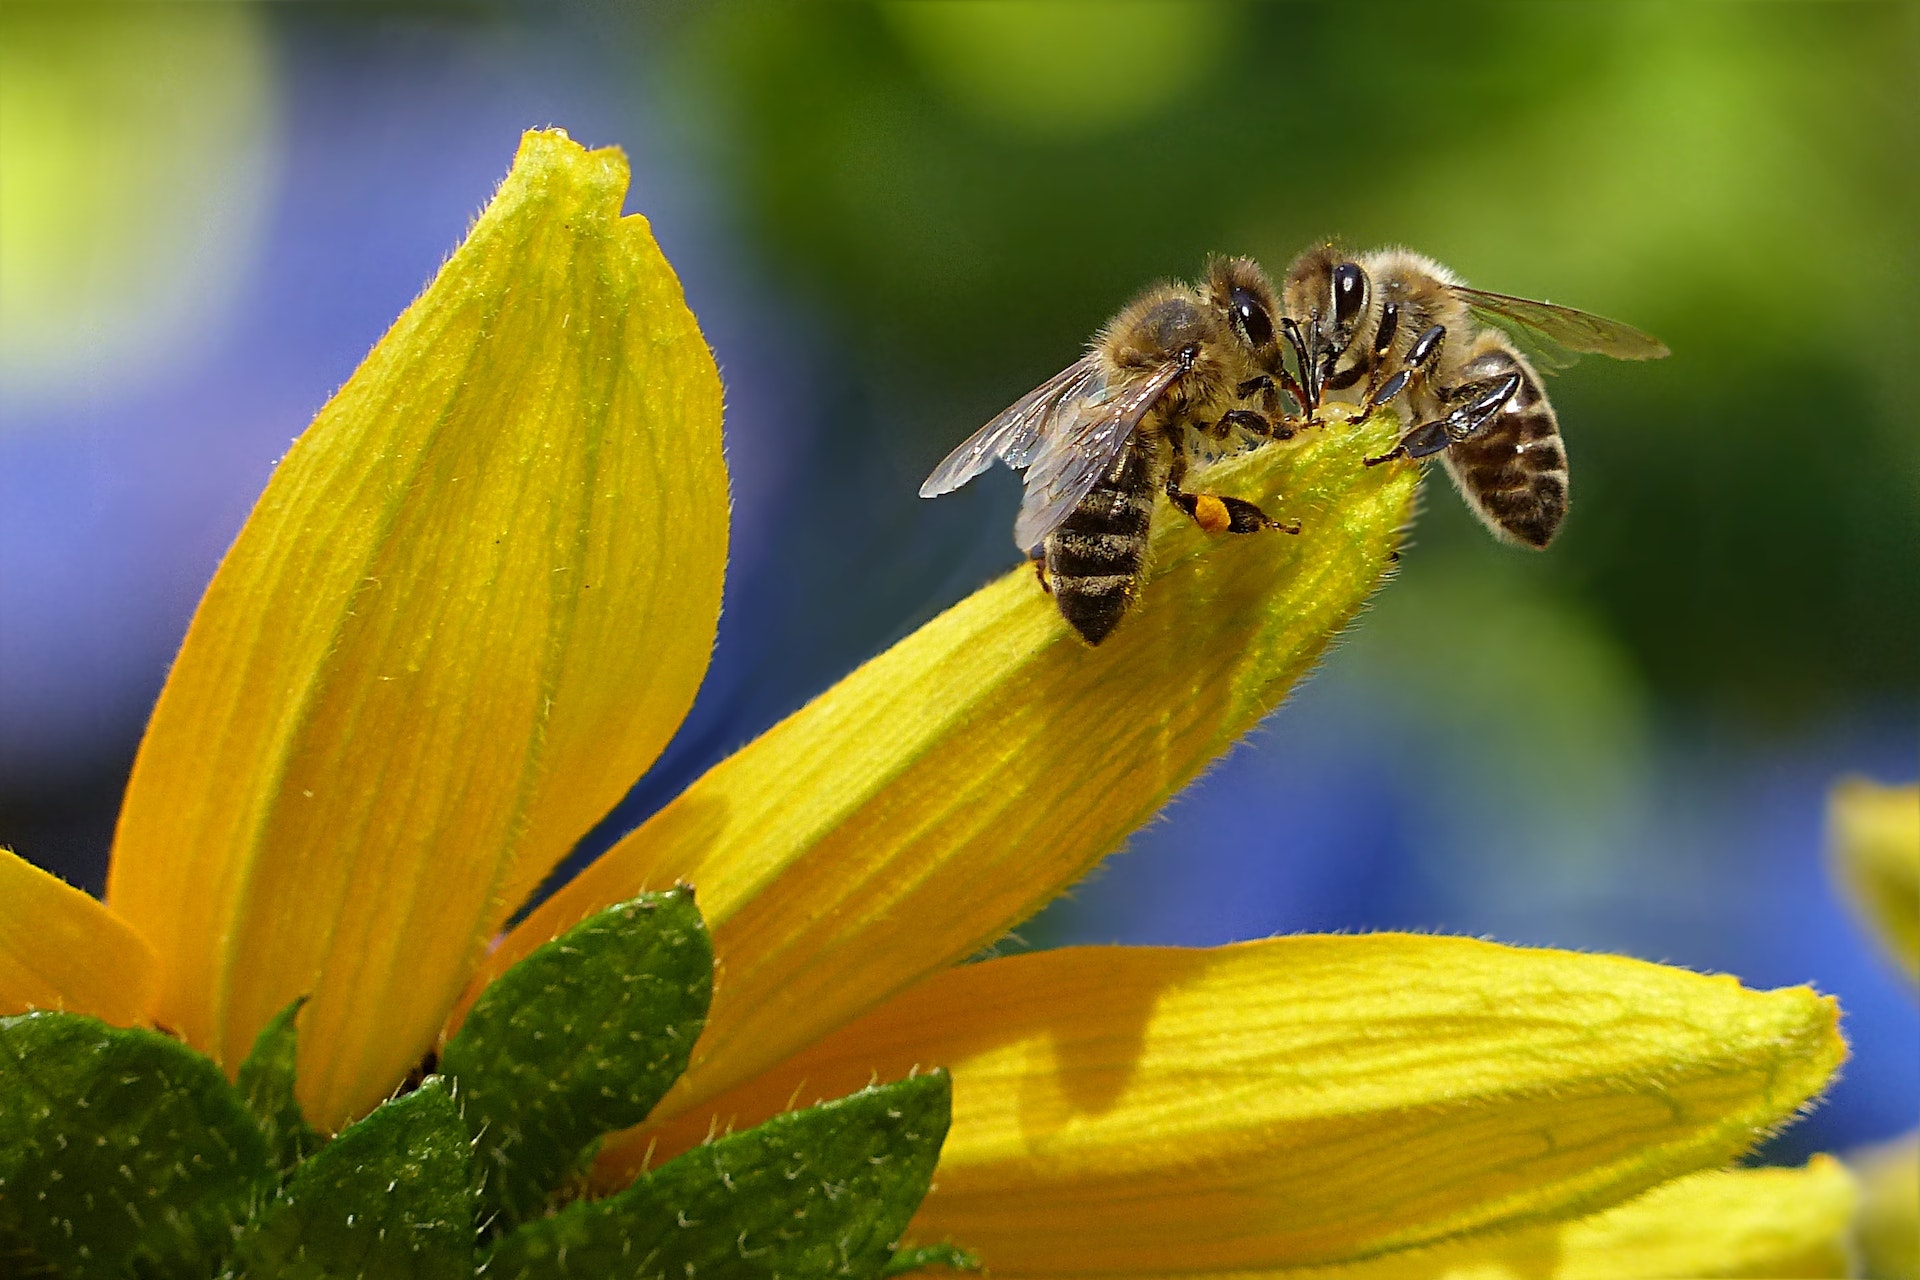 Le api sono considerate sentinelle ambientali, e pertanto a partire dal polline da loro raccolto è possibile fare valutazioni sulla qualità dell'aria.